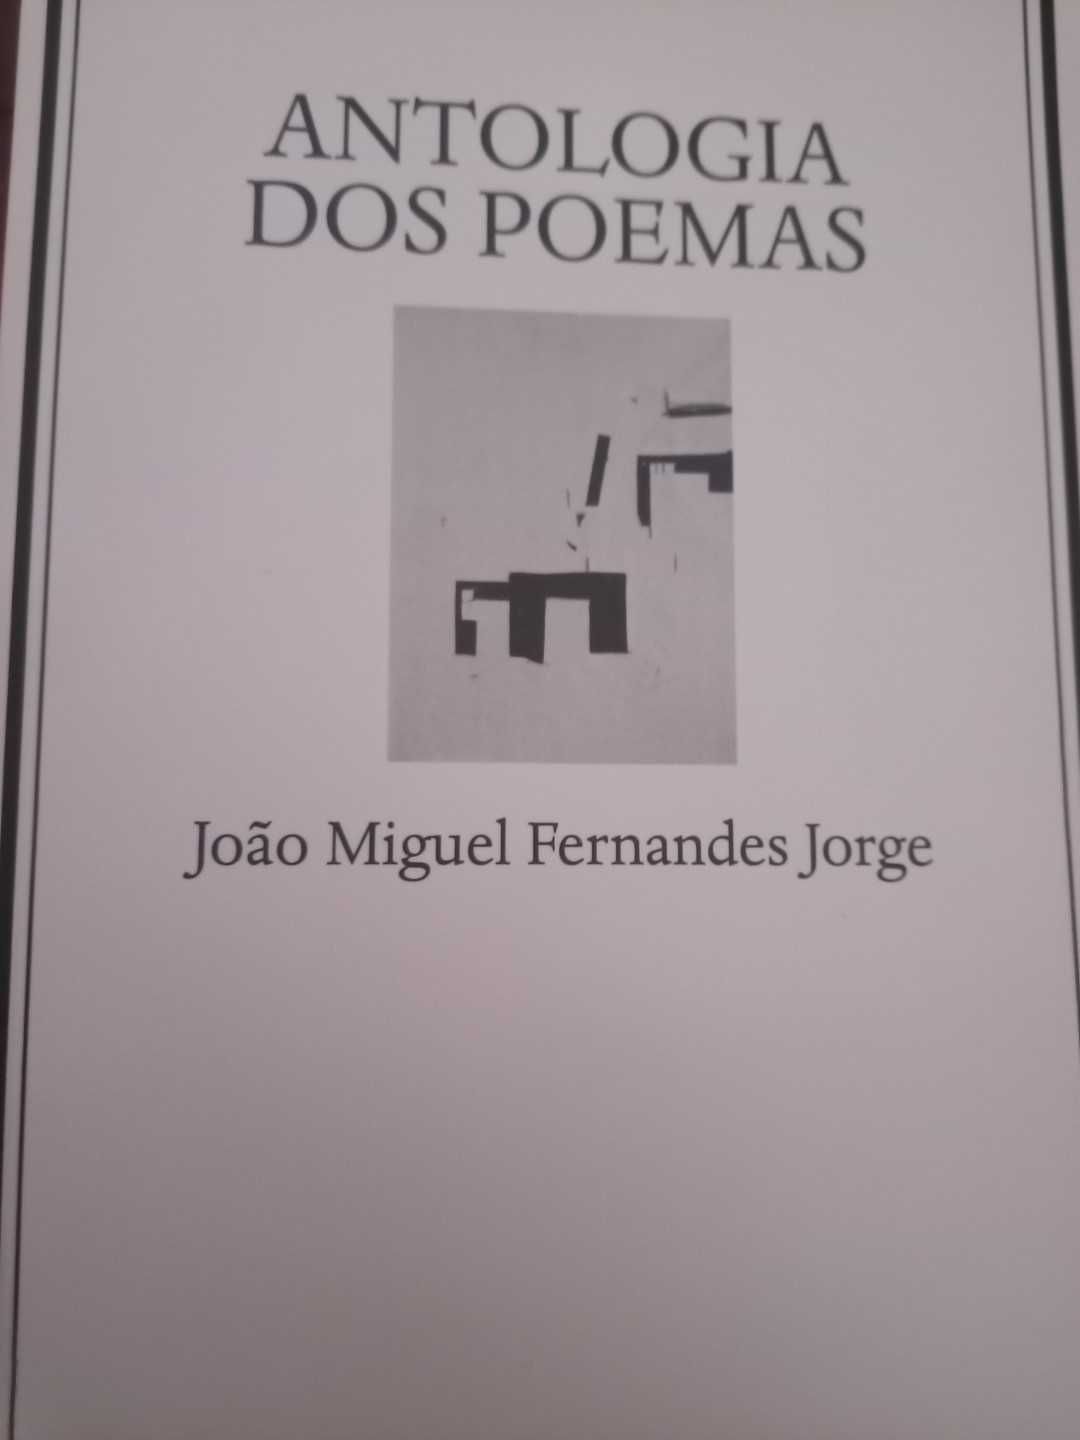 Antologia dos poemas de João Miguel Fernandes Jorge